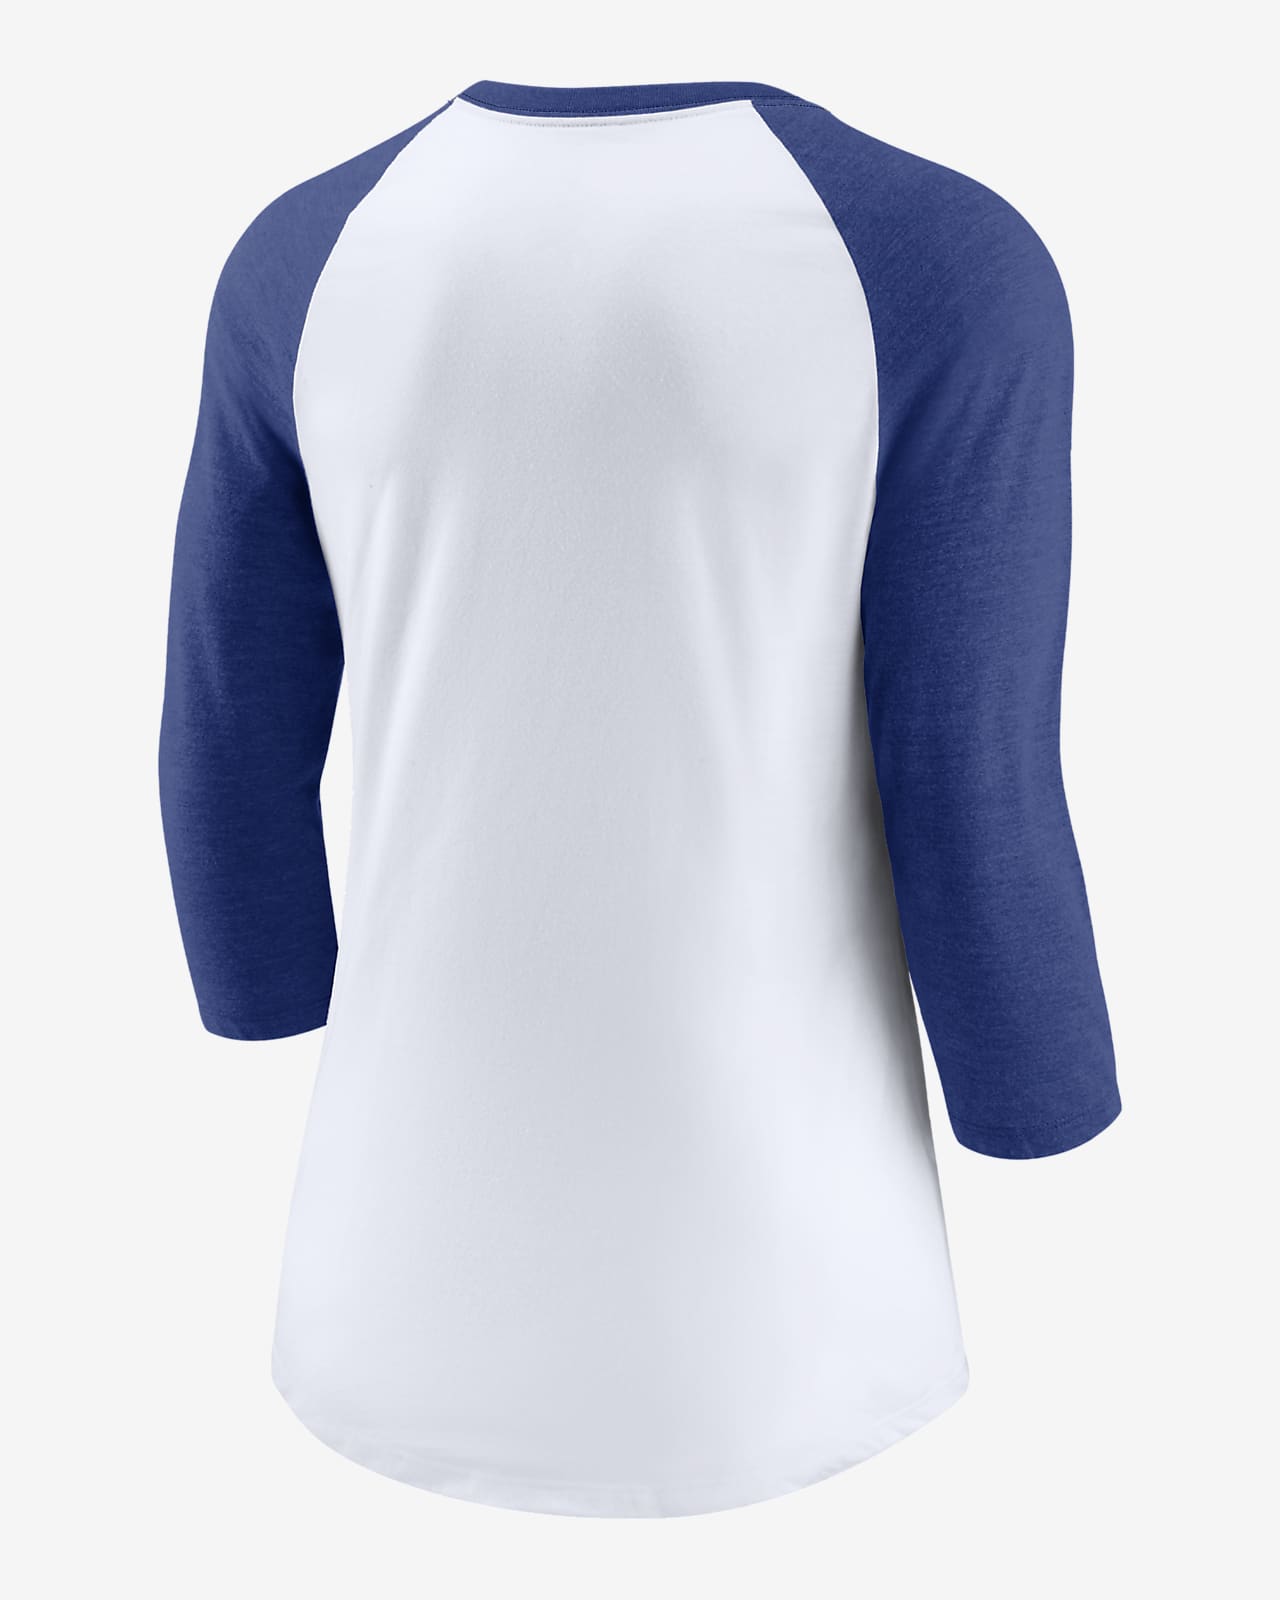 Chicago Cubs Women's 3/4-Sleeve Shirt